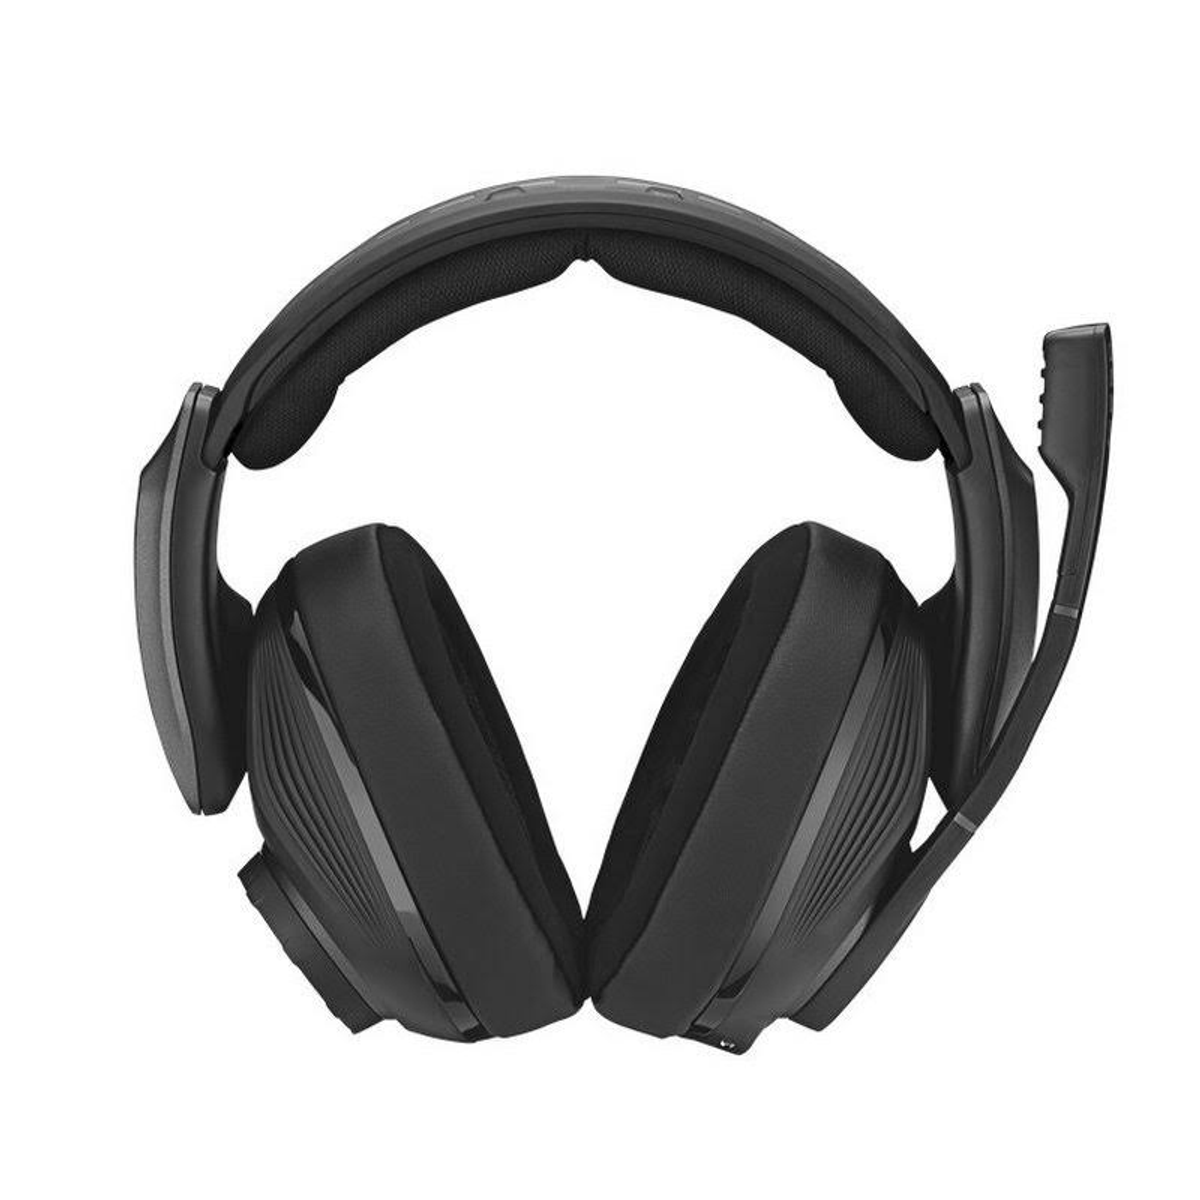 SENNHEISER GSP 670, On-ear Gaming Bluetooth Schwarz Headset